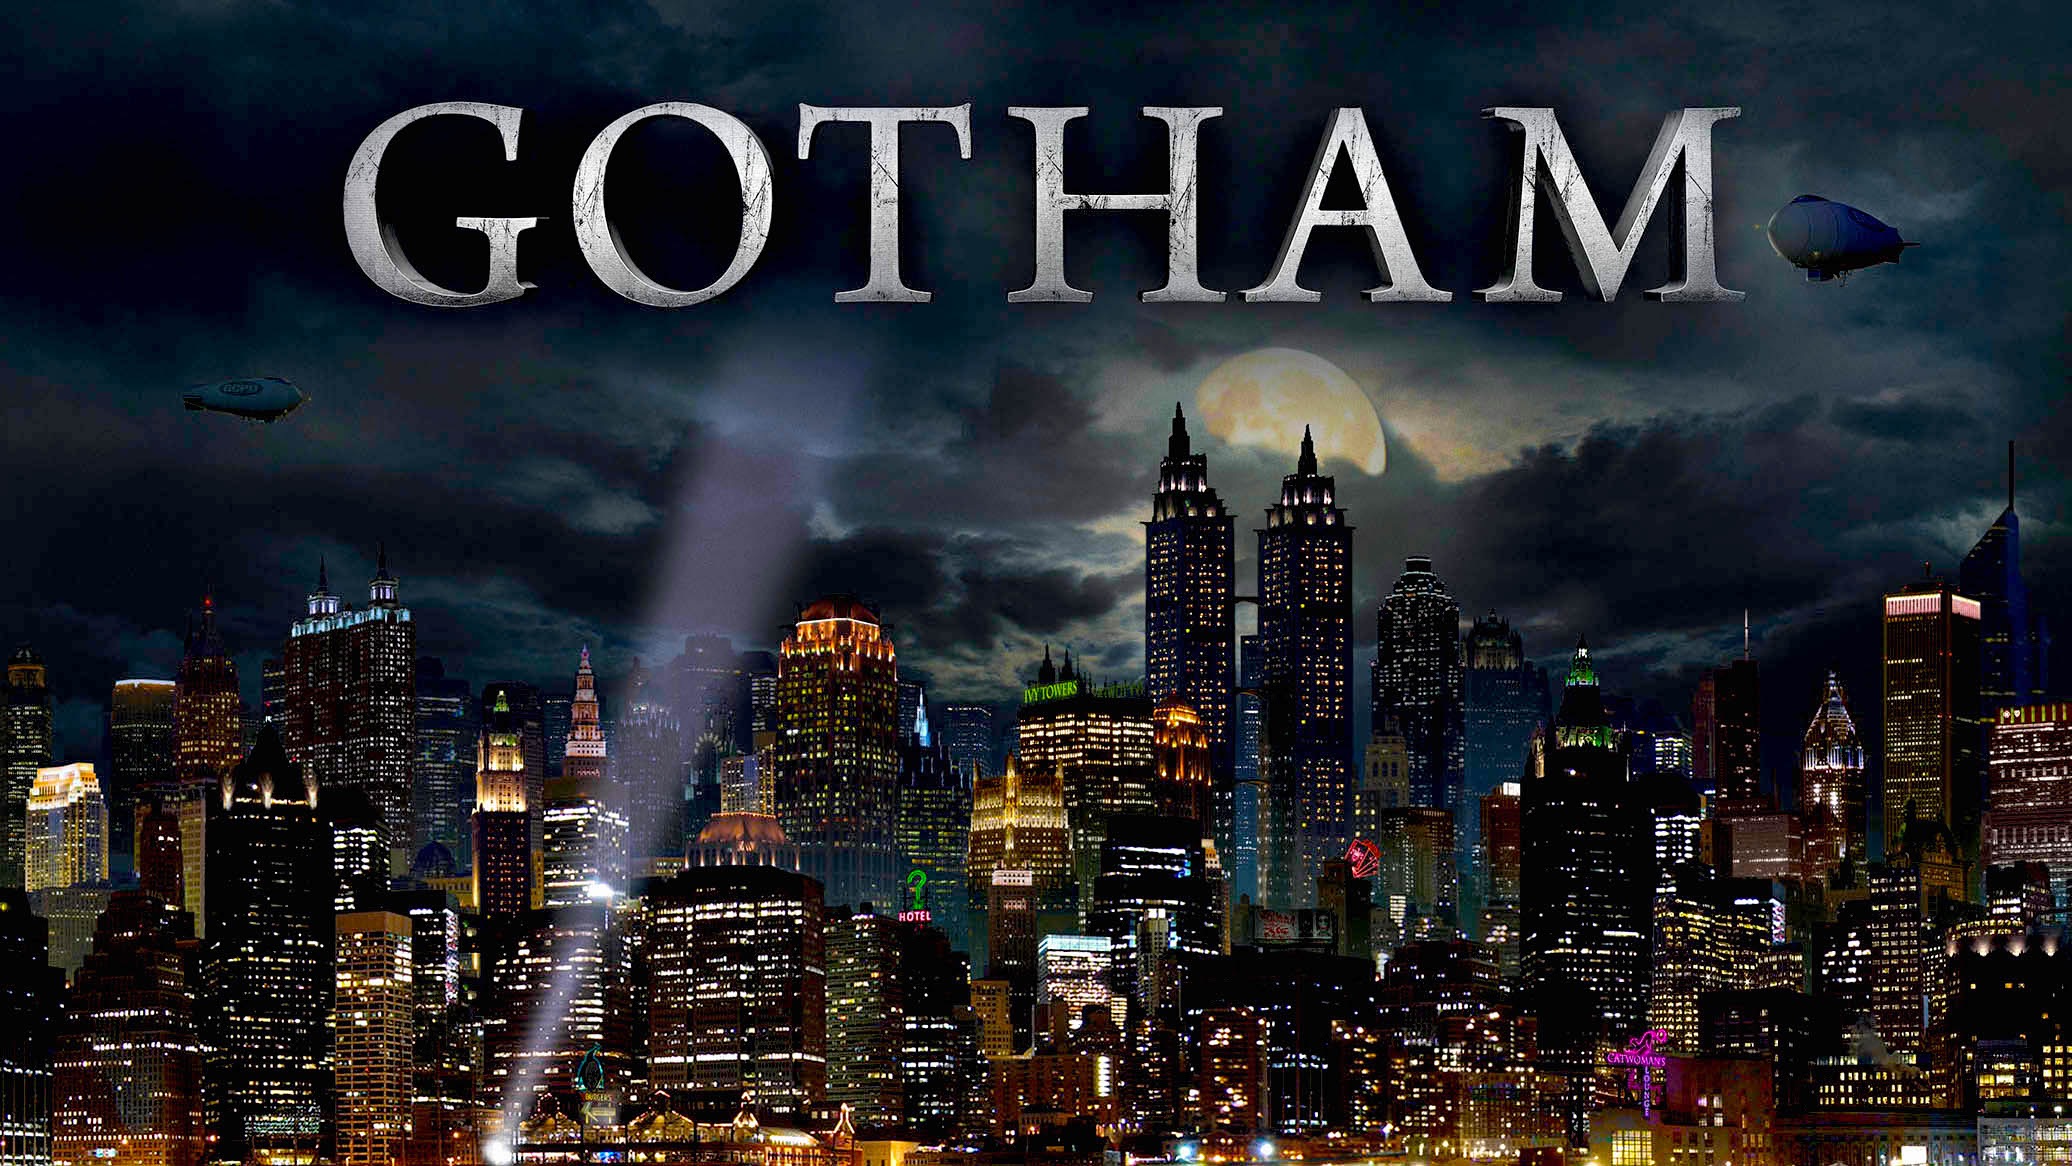 Gotham Picture